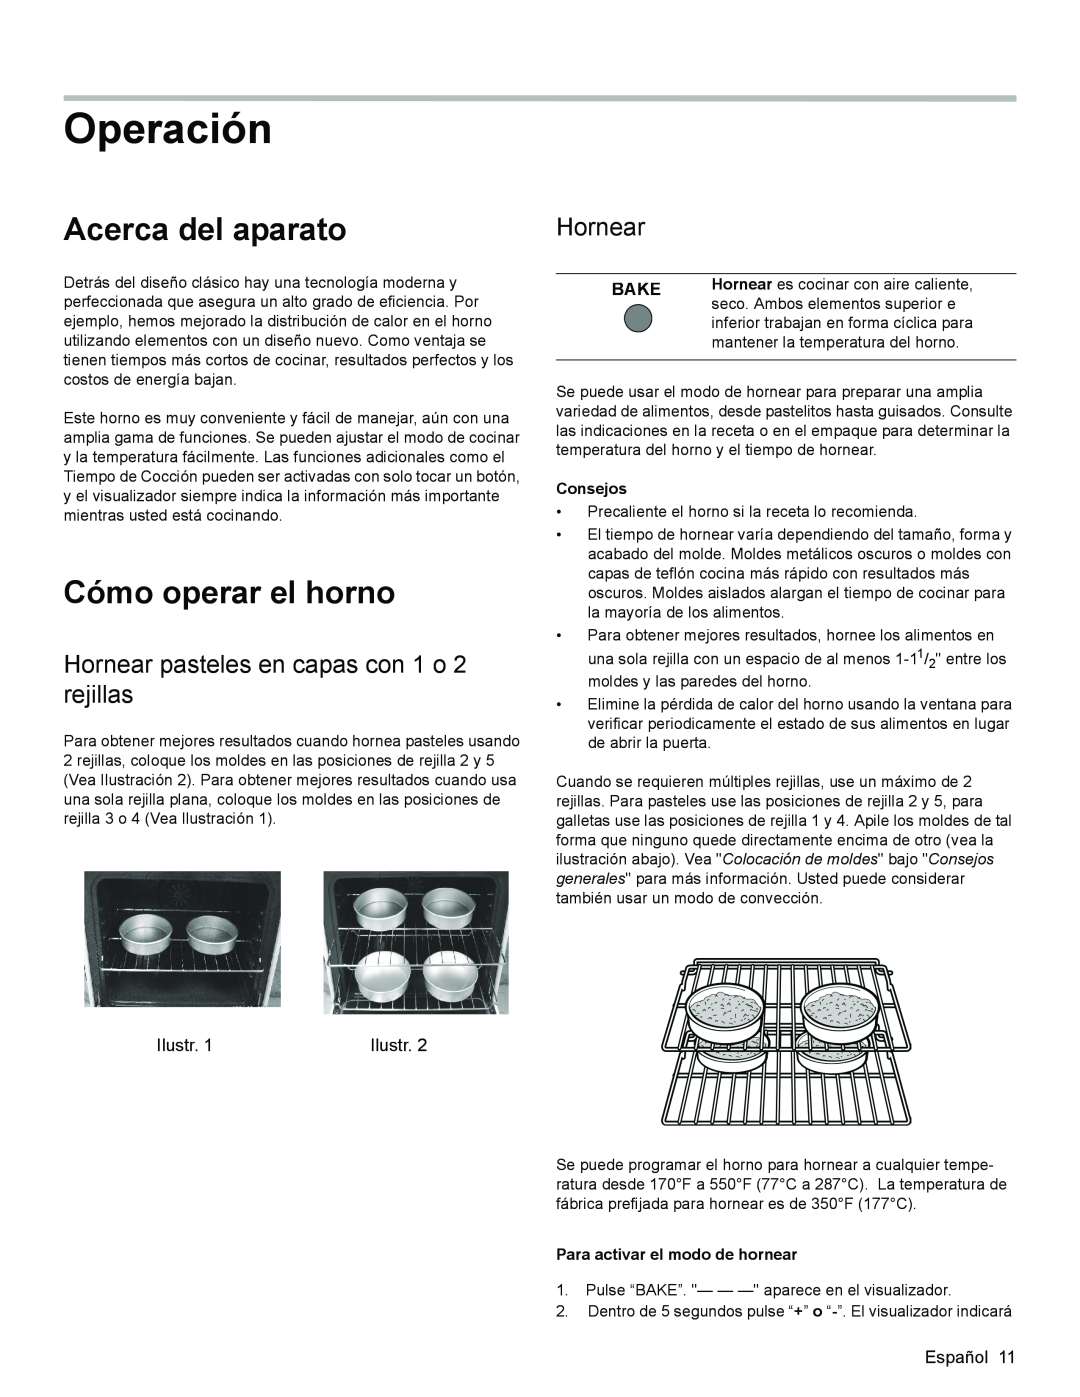 Bosch Appliances HES3063U manual Operación, Acerca del aparato, Cómo operar el horno, Hornear, Bake, Consejos 